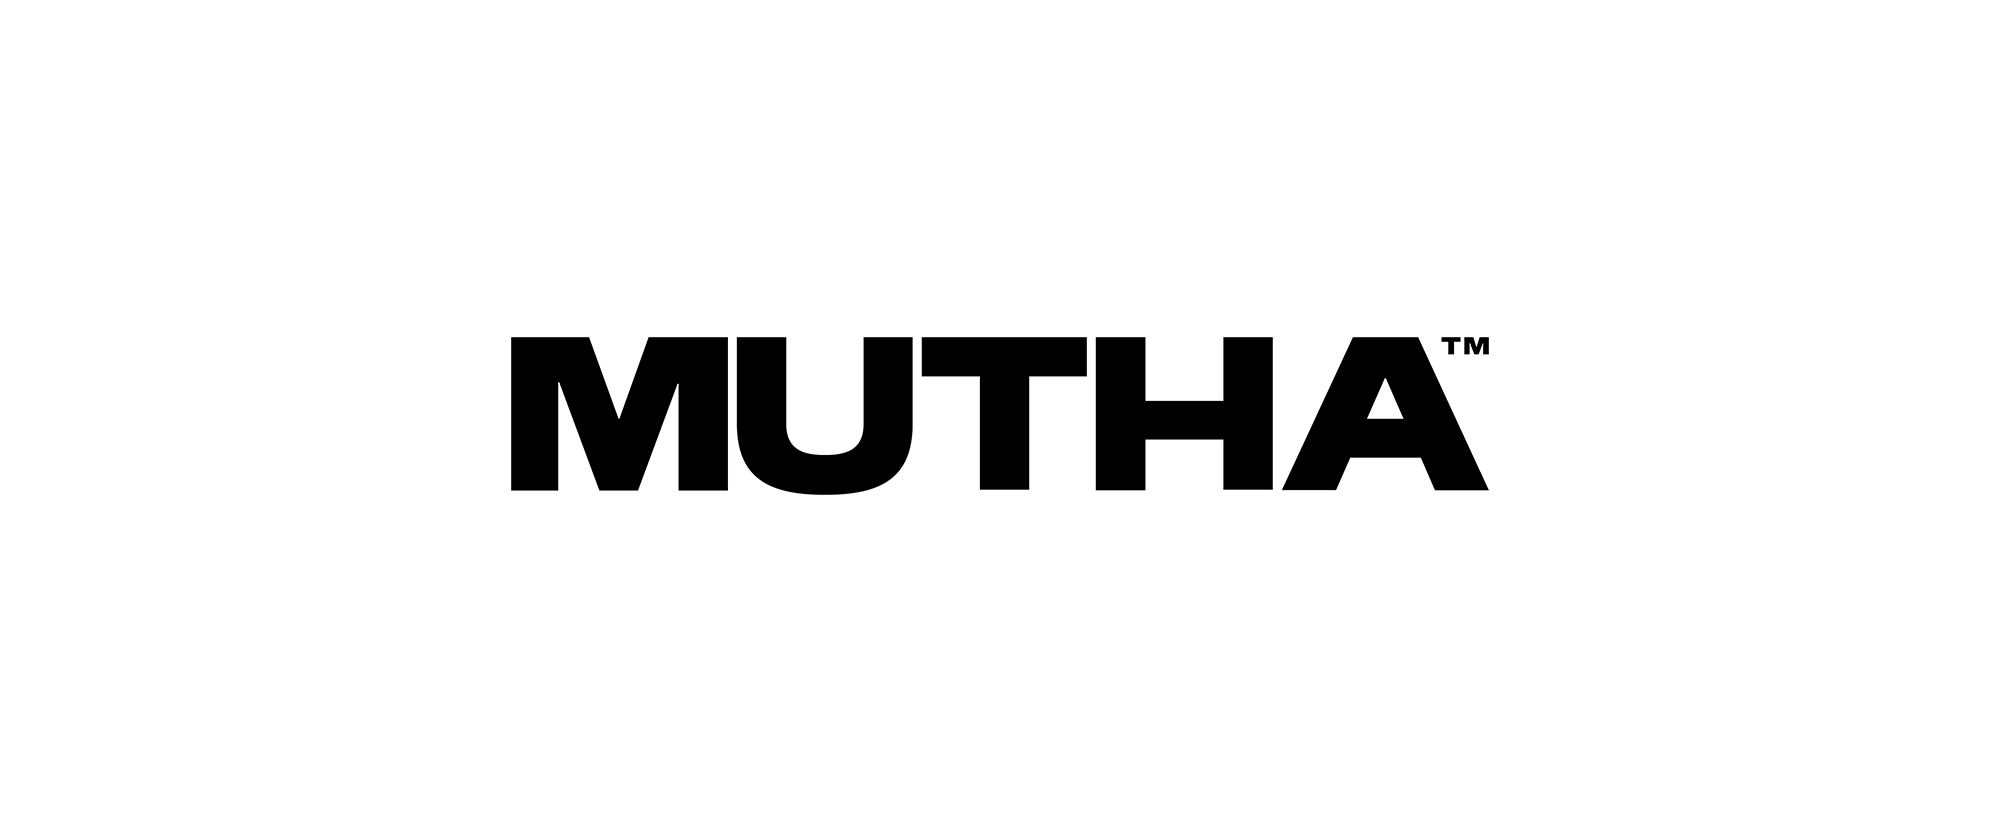 mutha_logo_new.png